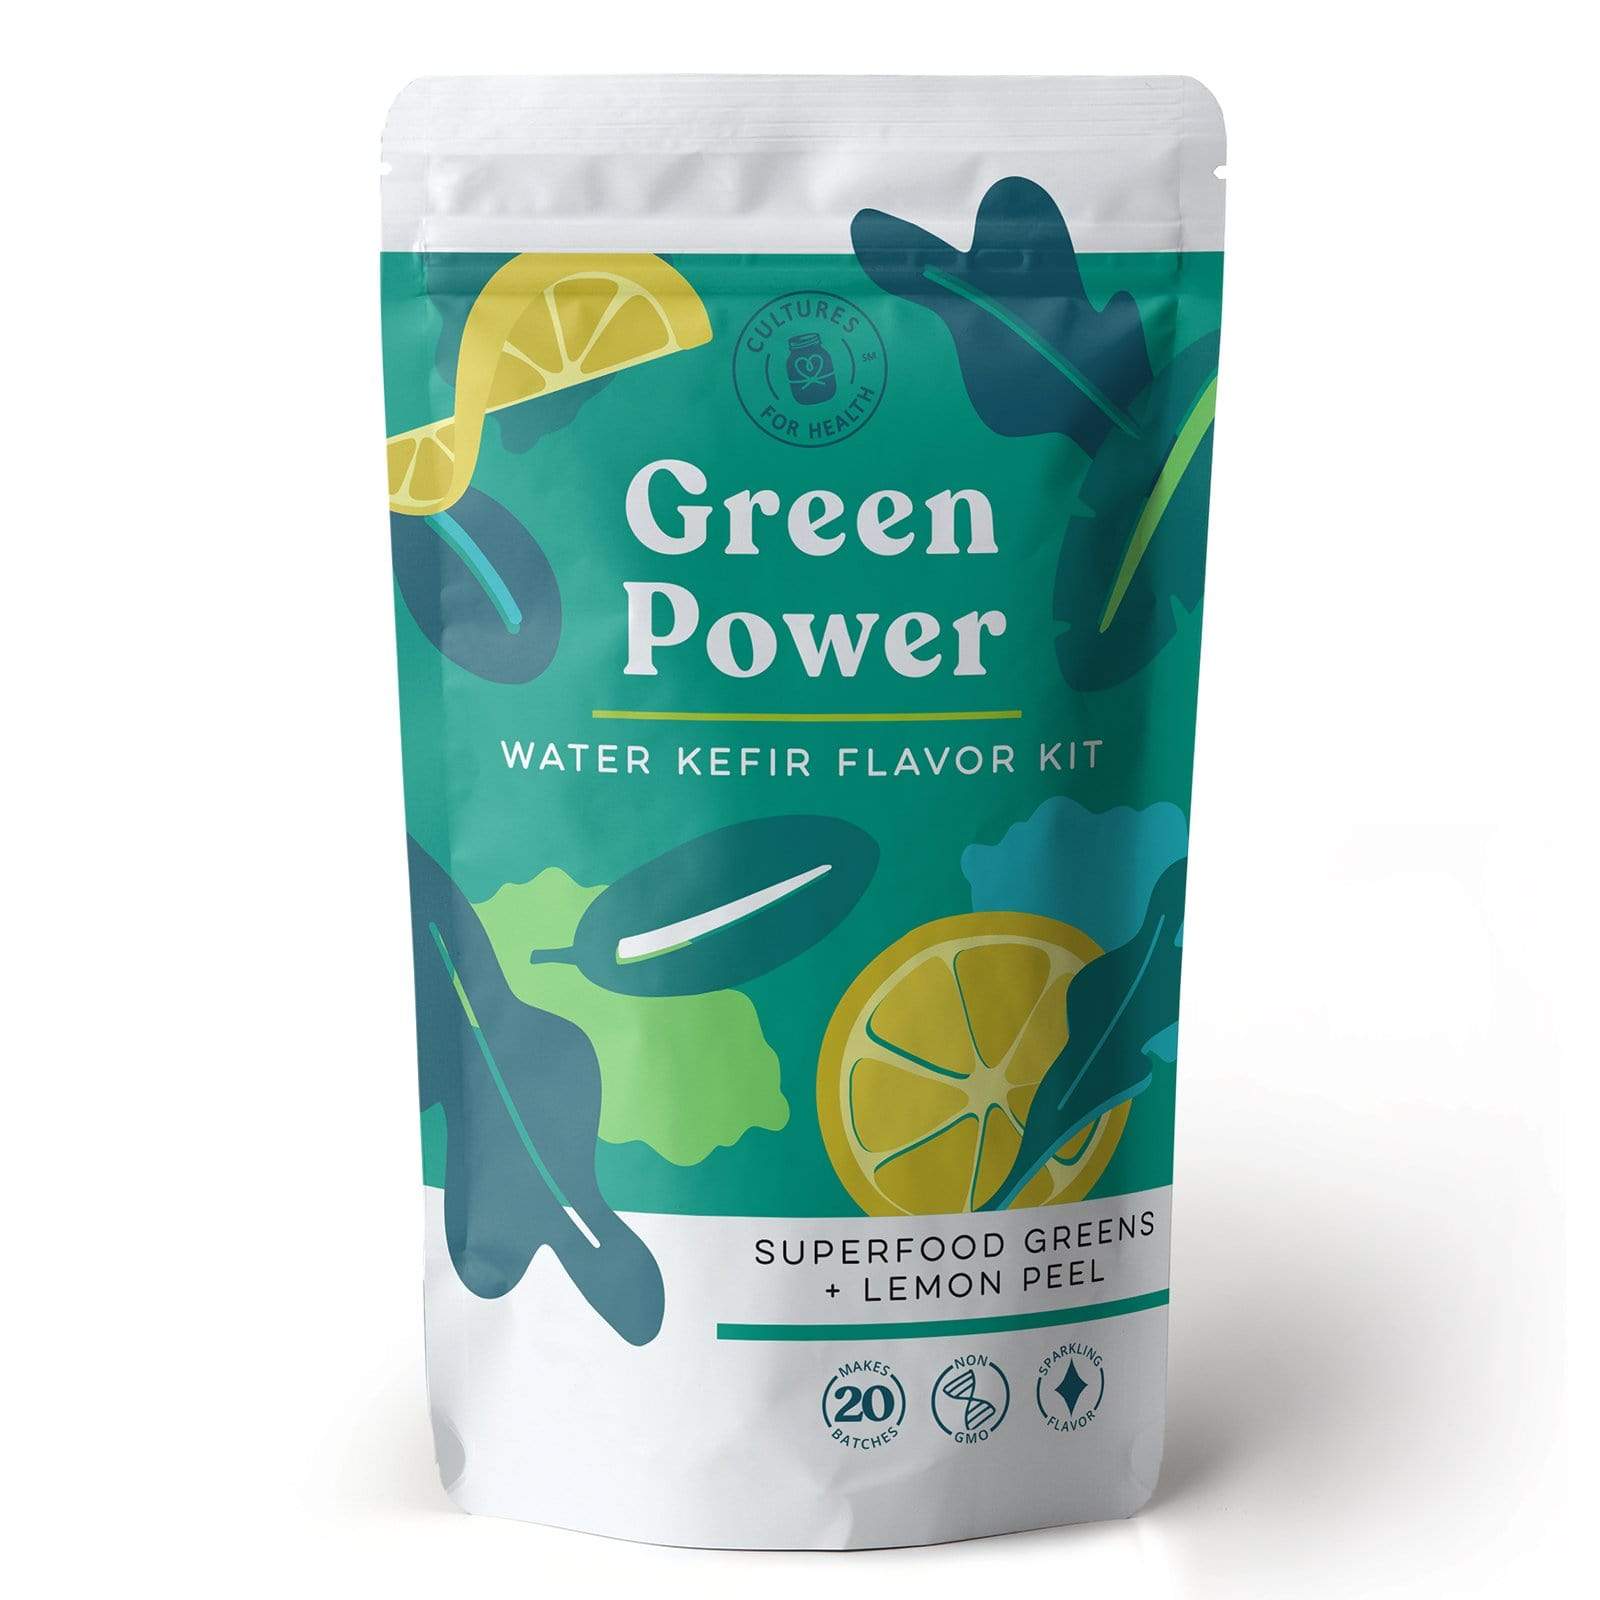 Kefir Green Power Water Kefir Flavor Kit